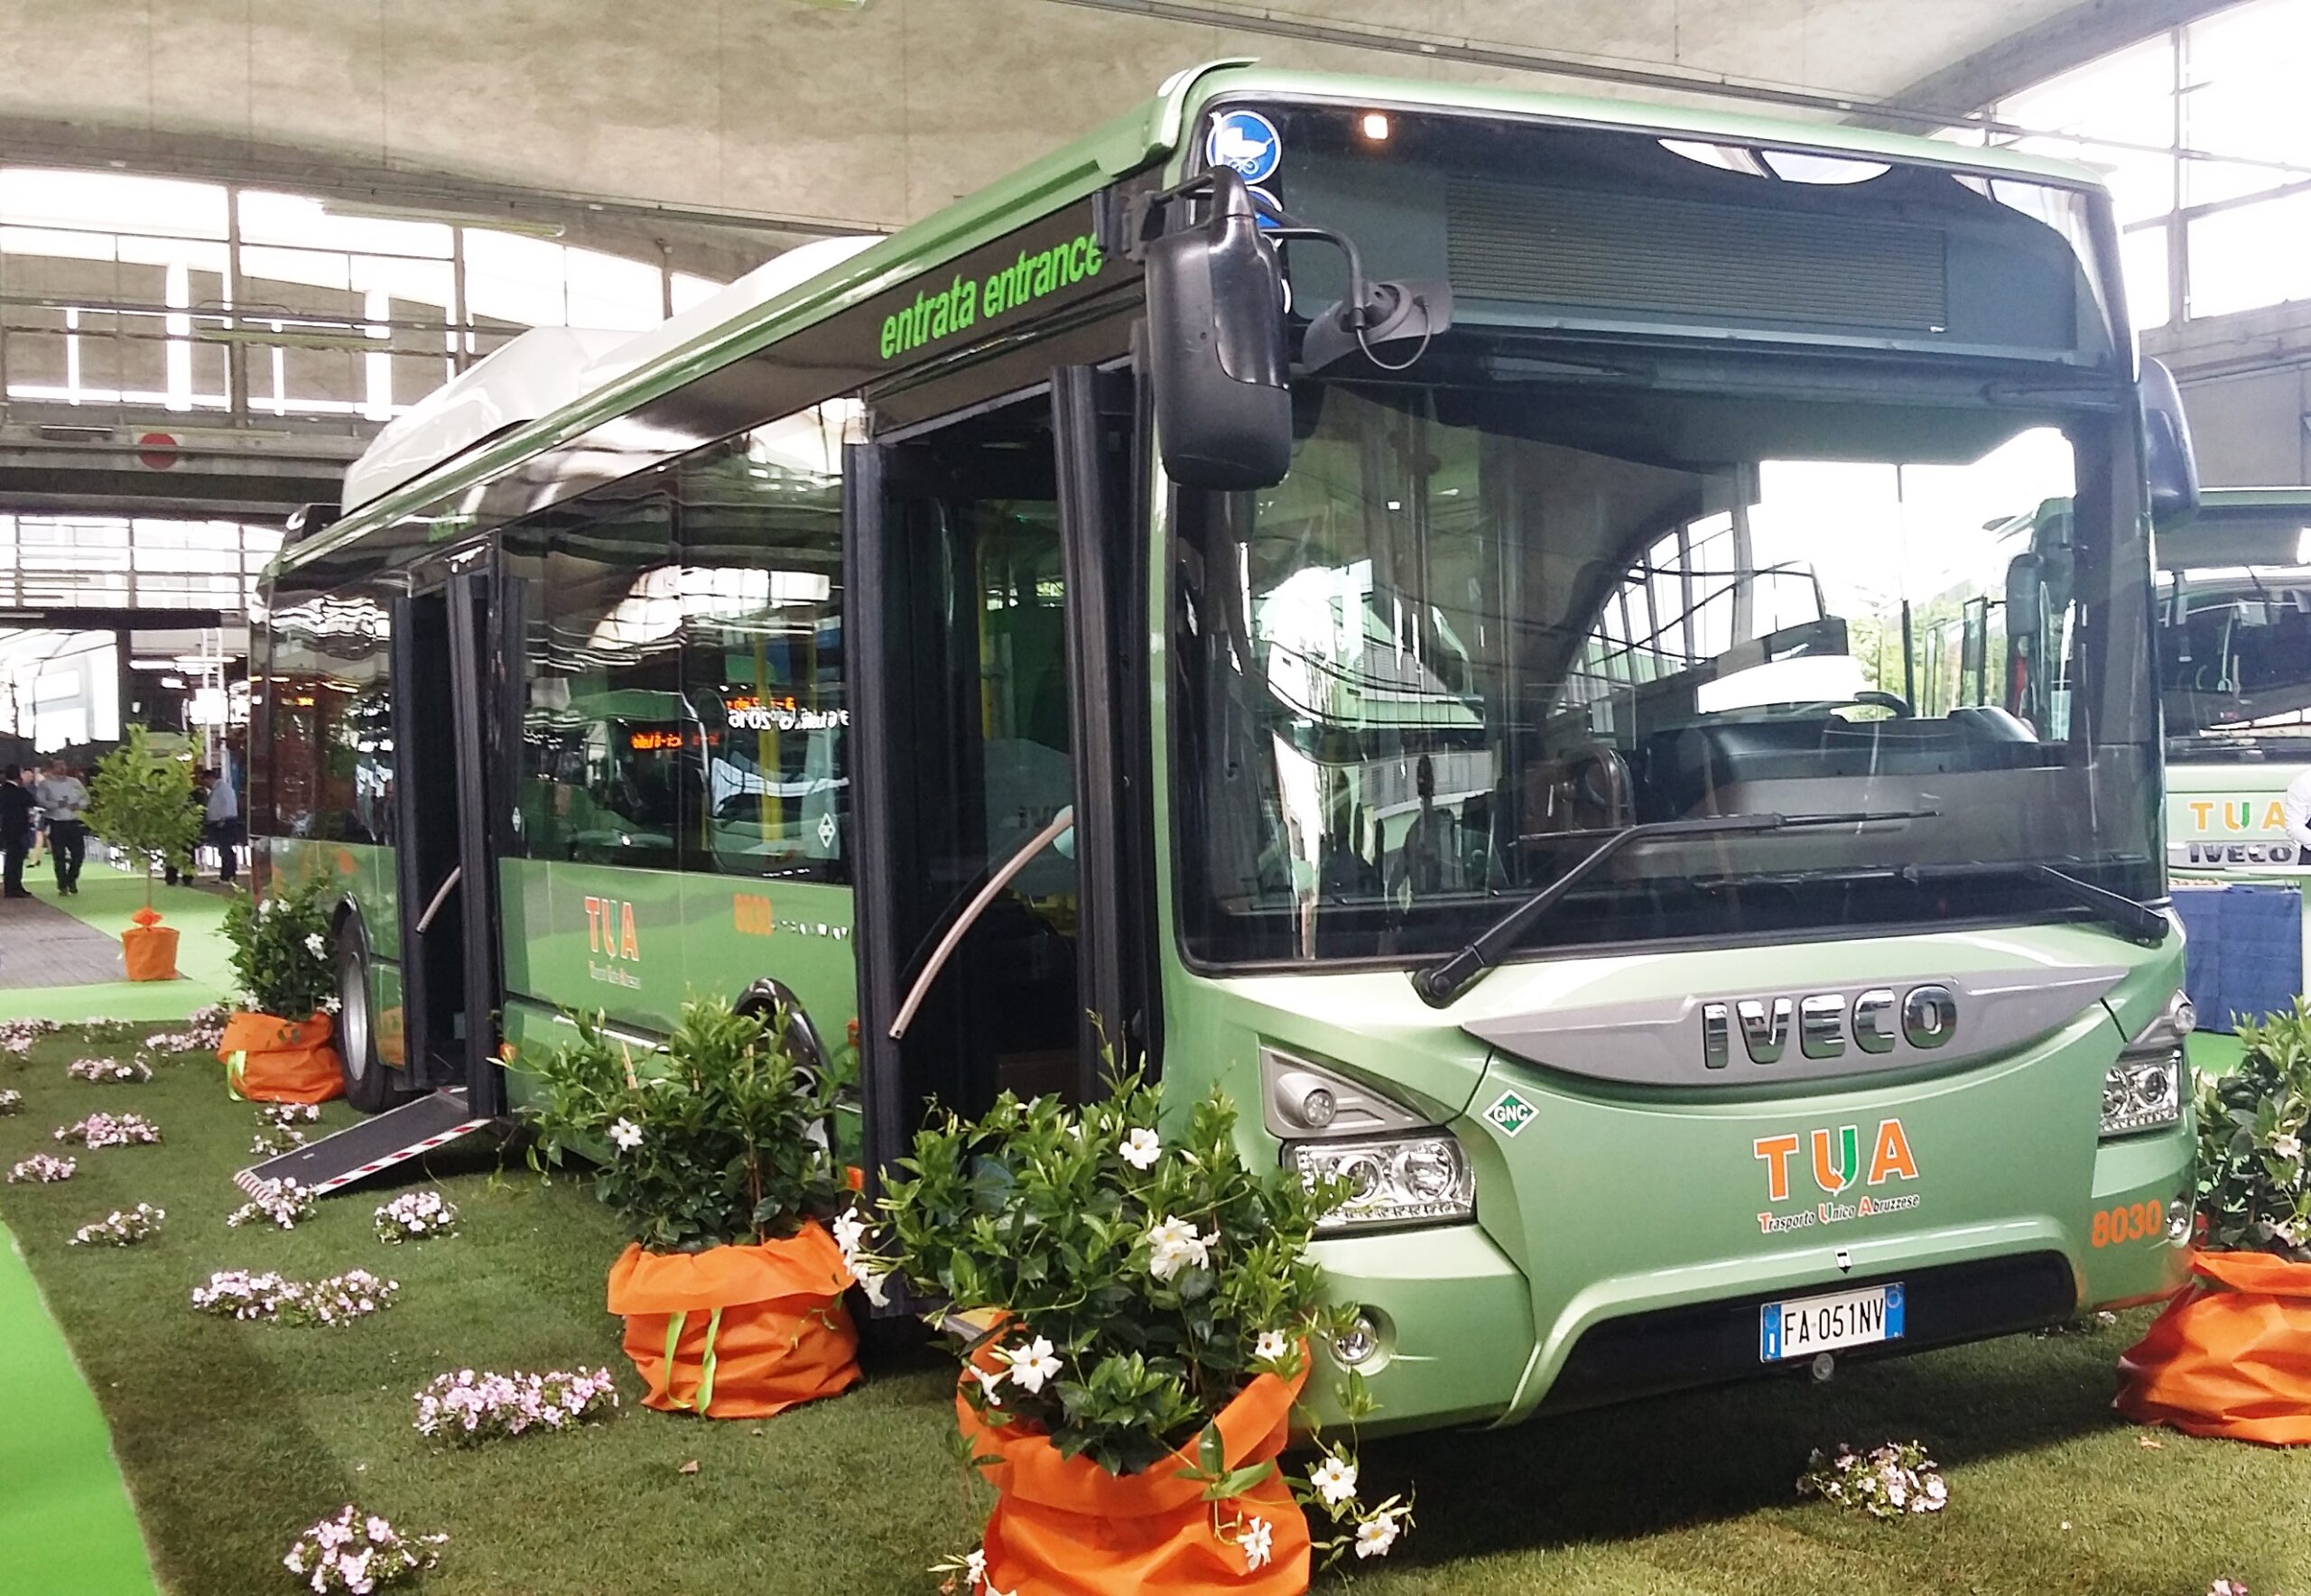 Pescara: Iveco consegna 36 nuovi autobus a TUA Abruzzo